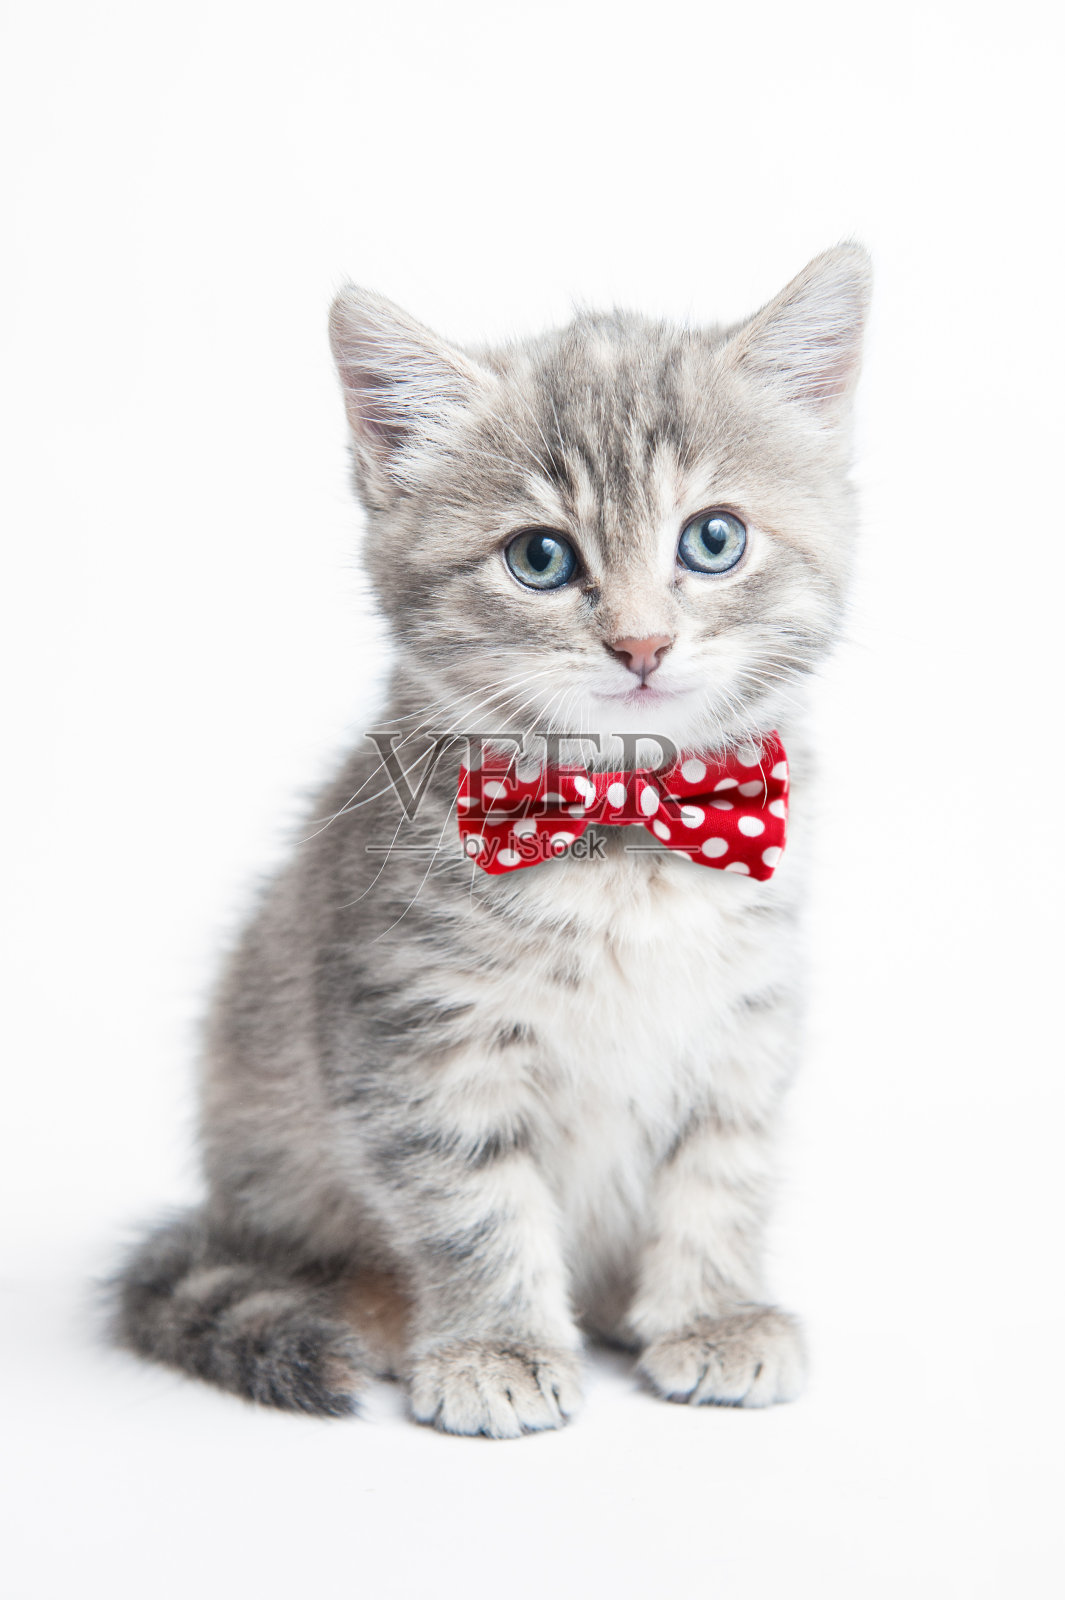 一只戴着领结的灰色小猫照片摄影图片